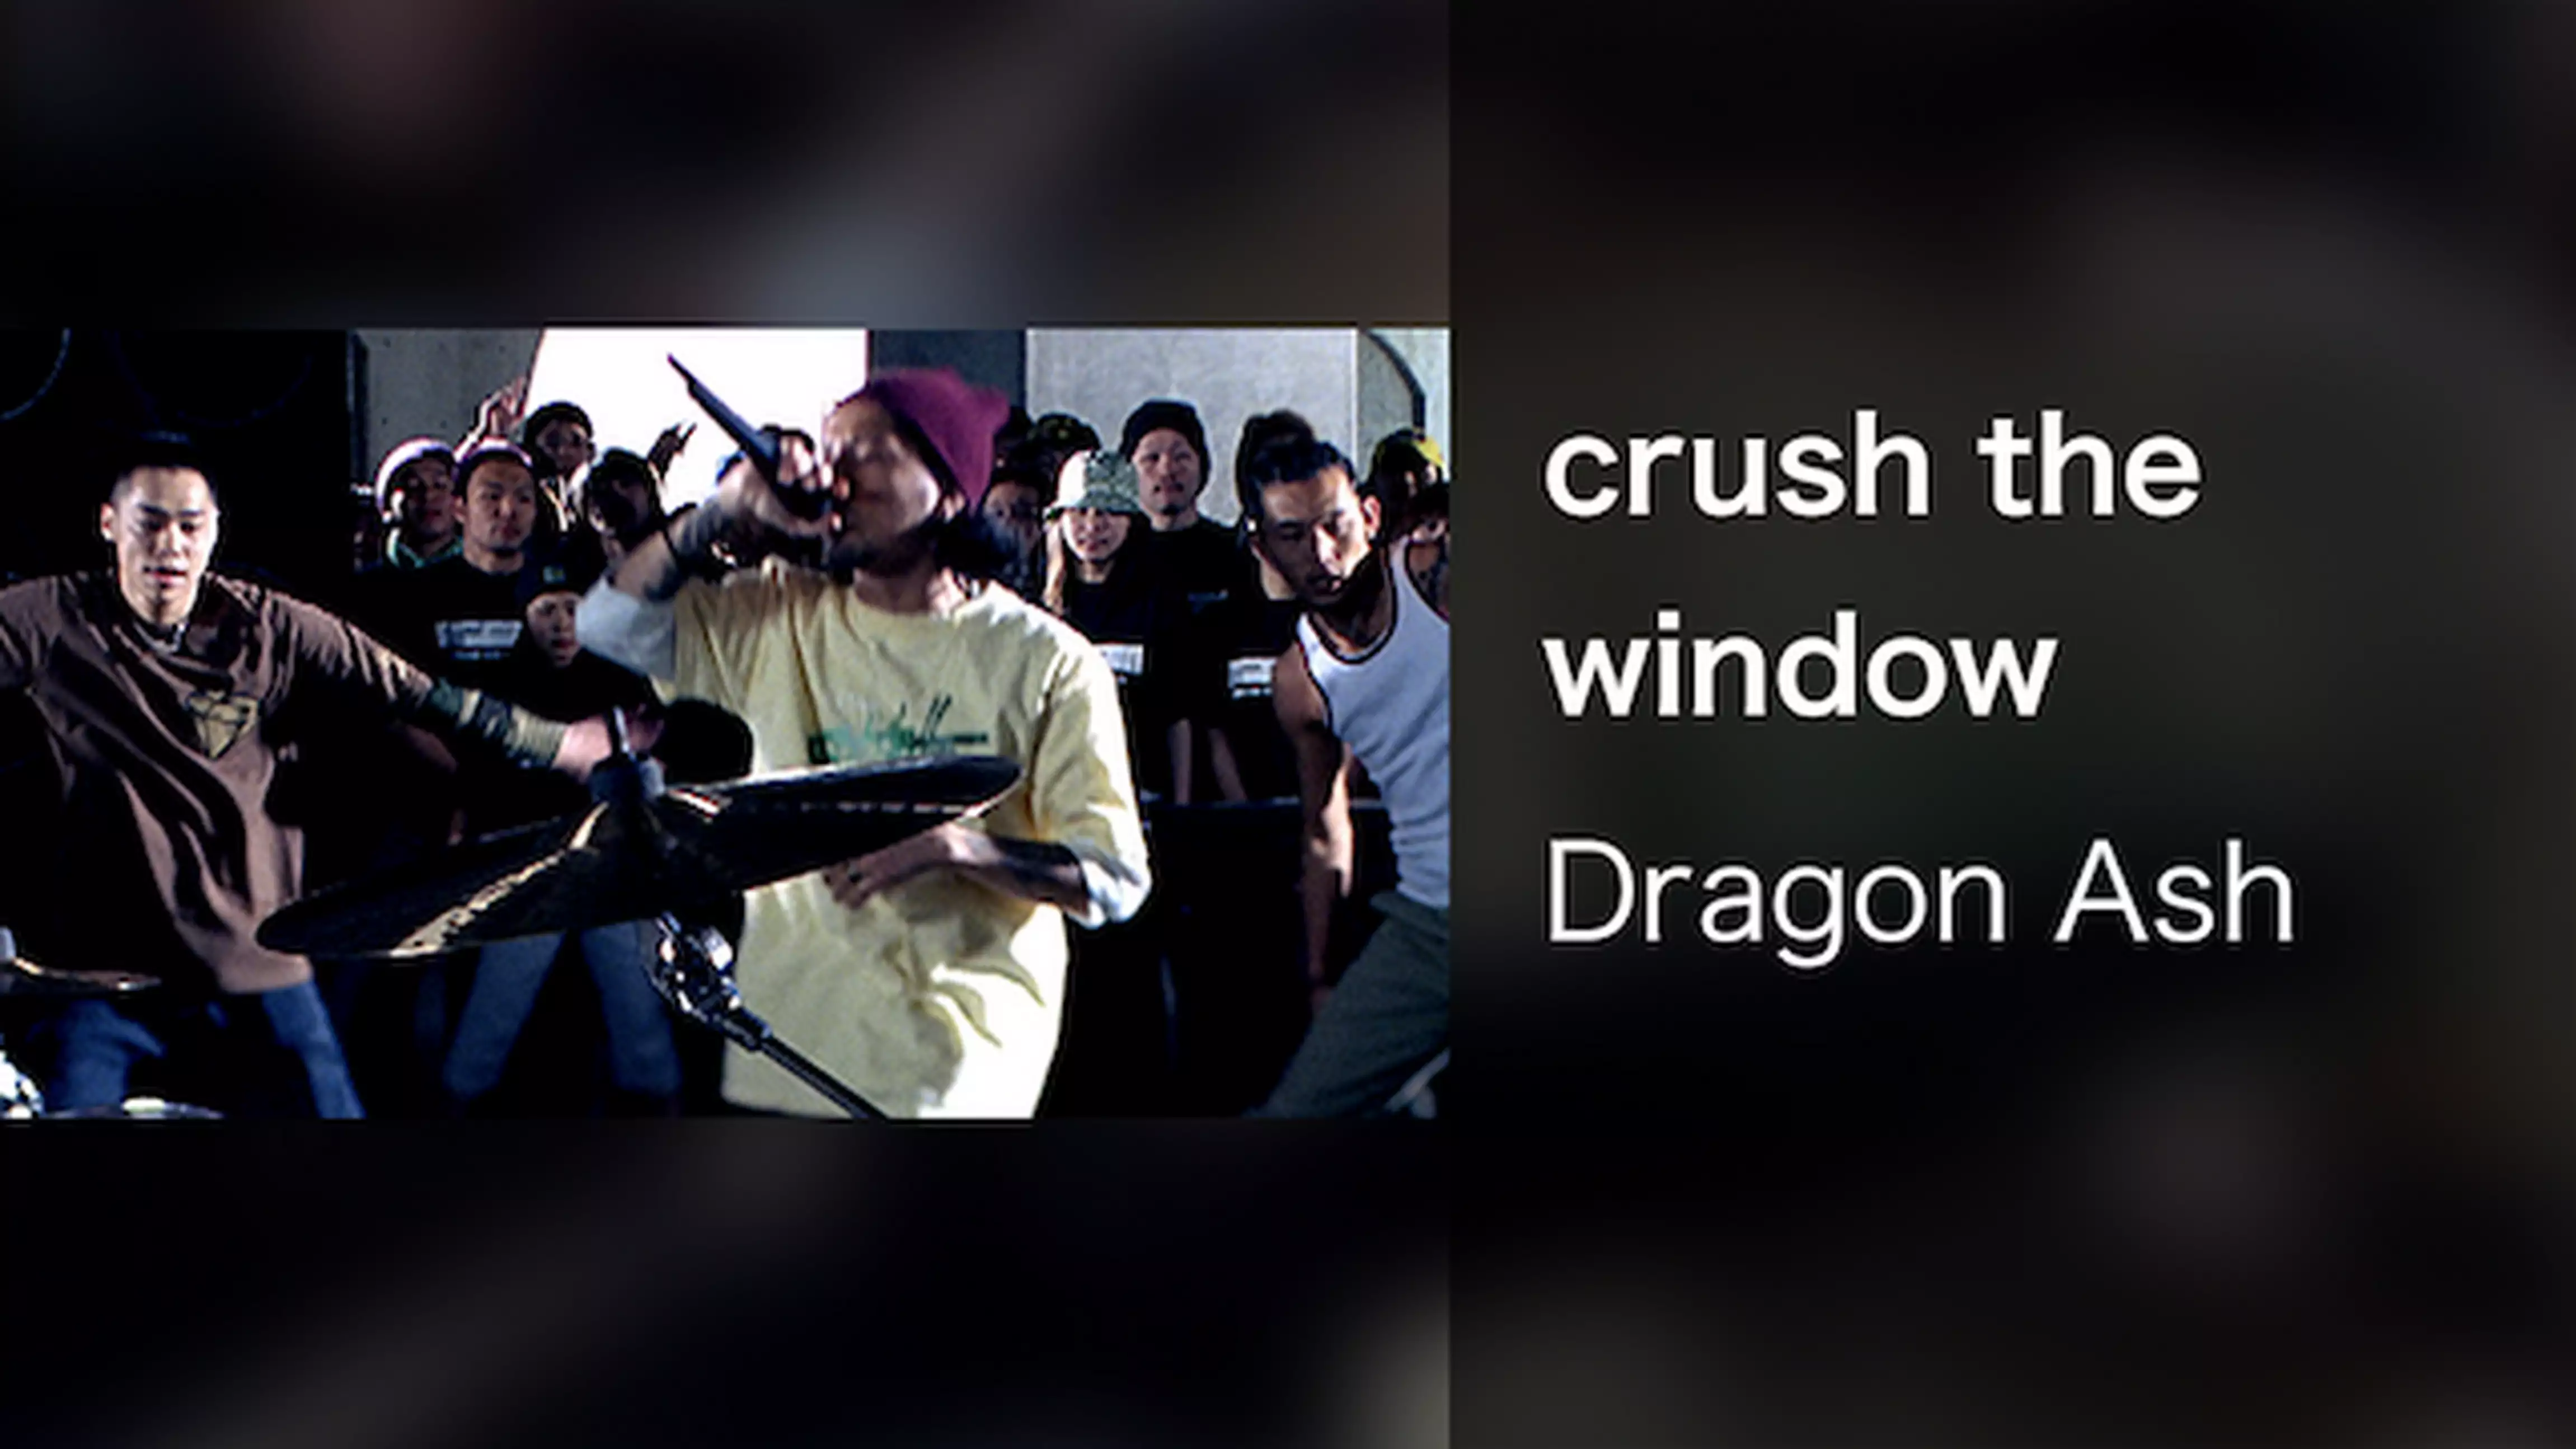 crush the window